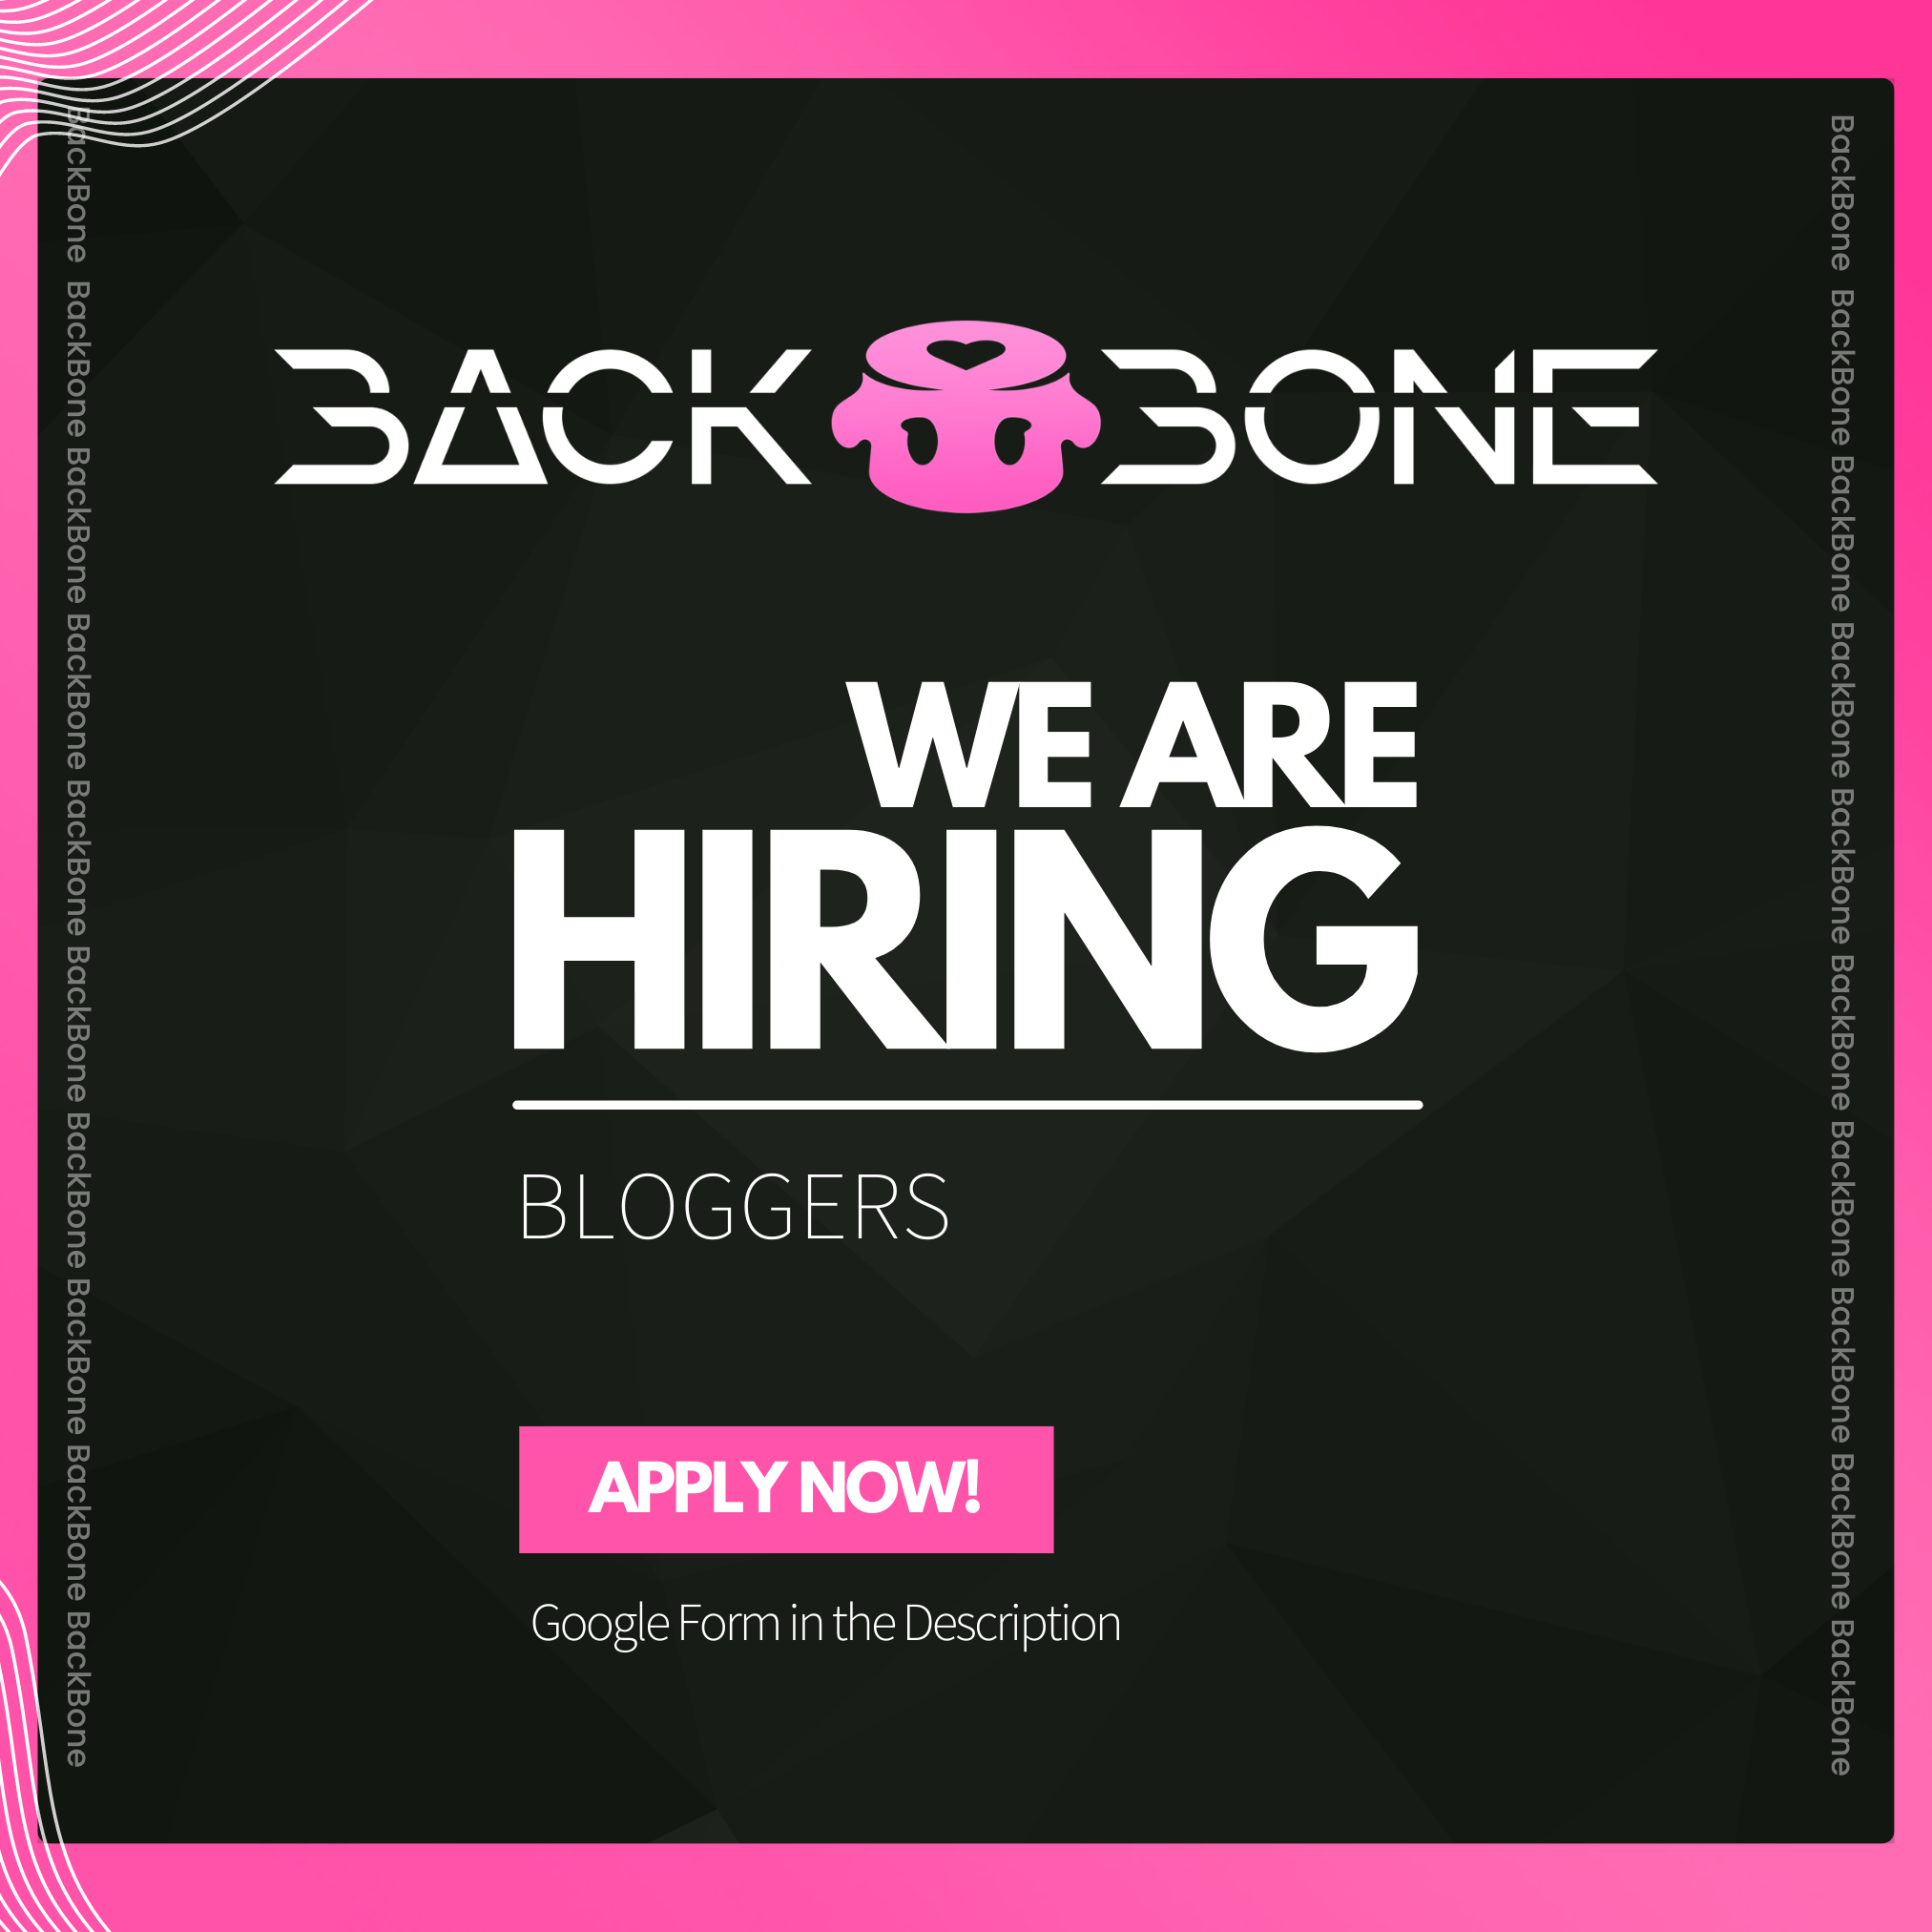 Backbone – Blogger Search